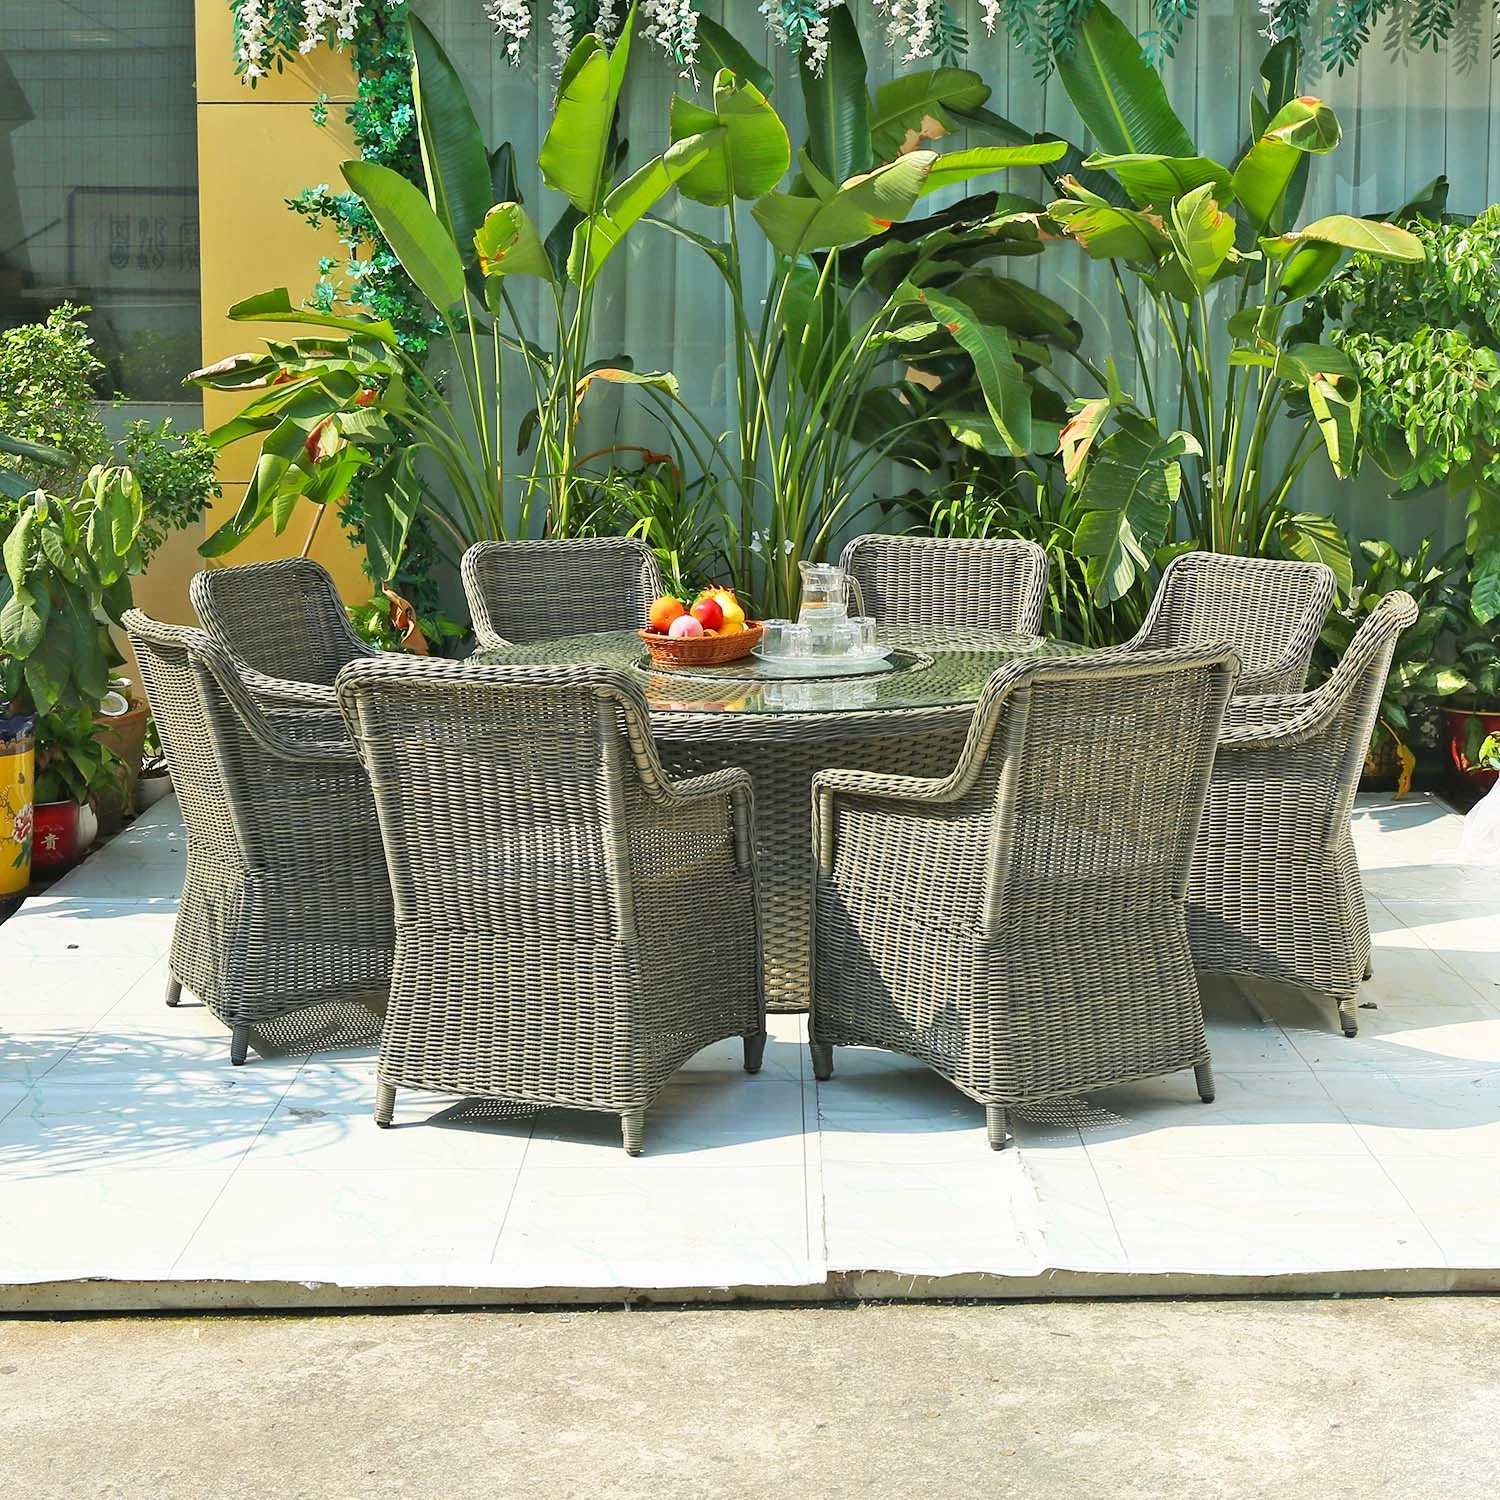 Fábrica moderno Jardín Ratán Muebles Patio comedor Mesa de la playa Sillas Mobiliario de exterior